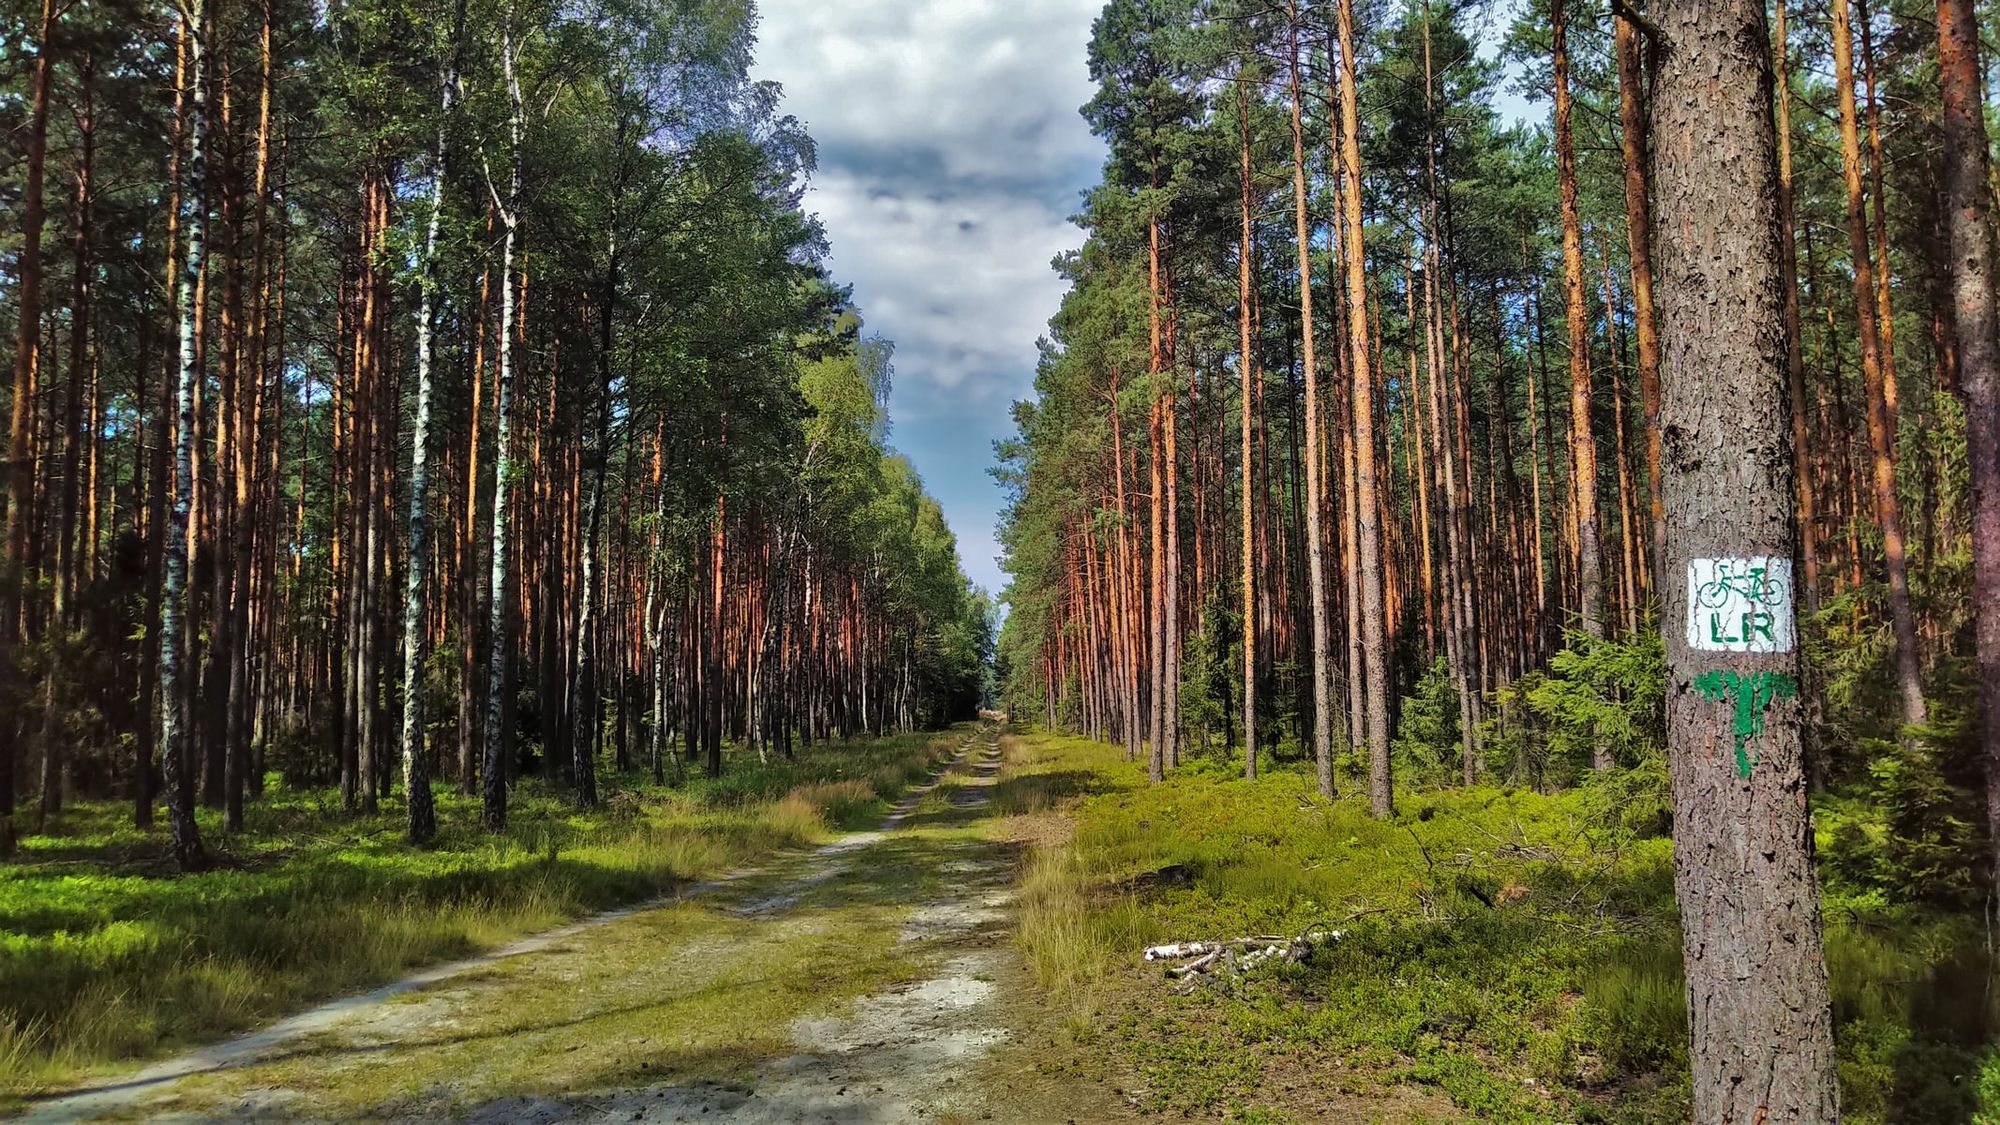 Niekończące się sosnowe lasy towarzyszące na szlaku Leśno Rajza. Autor: pskpaw